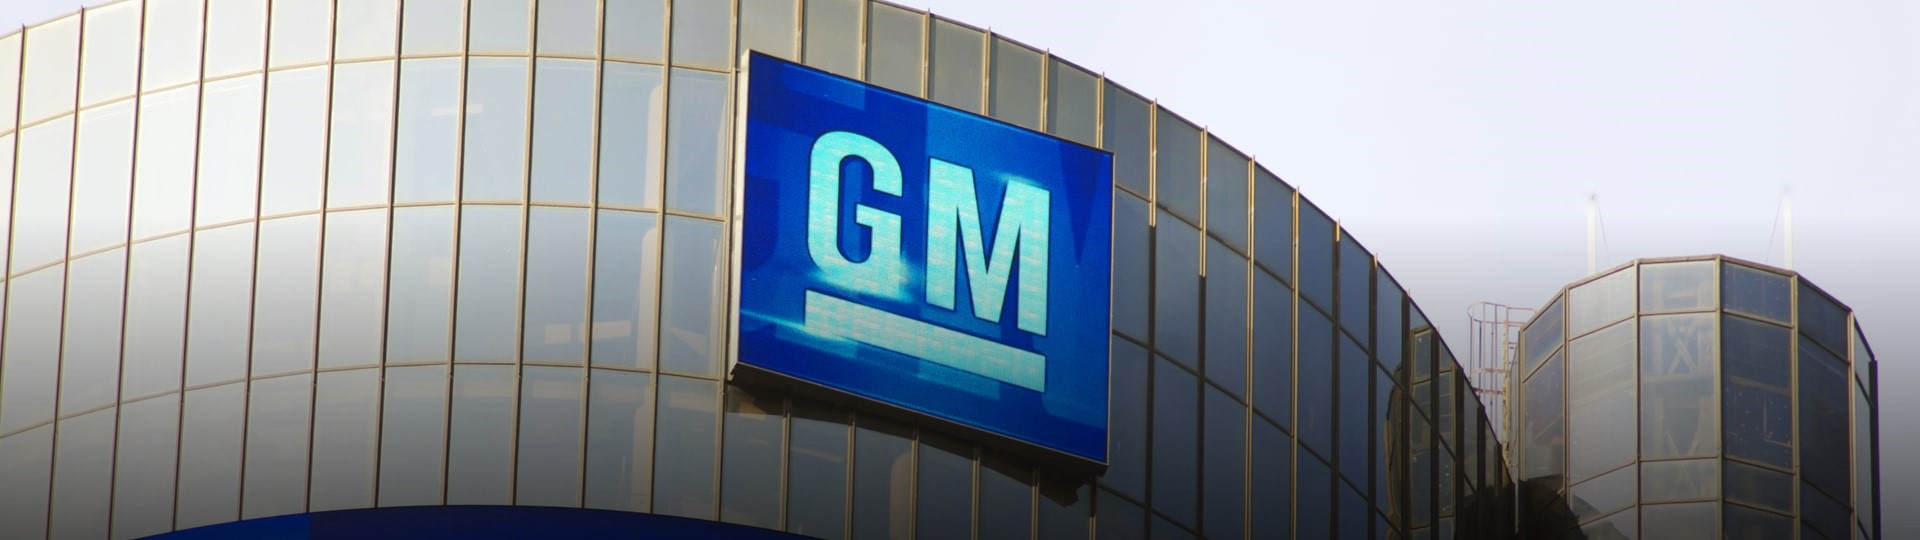 Automobilka General Motors prudce zvýšila čtvrtletní zisk